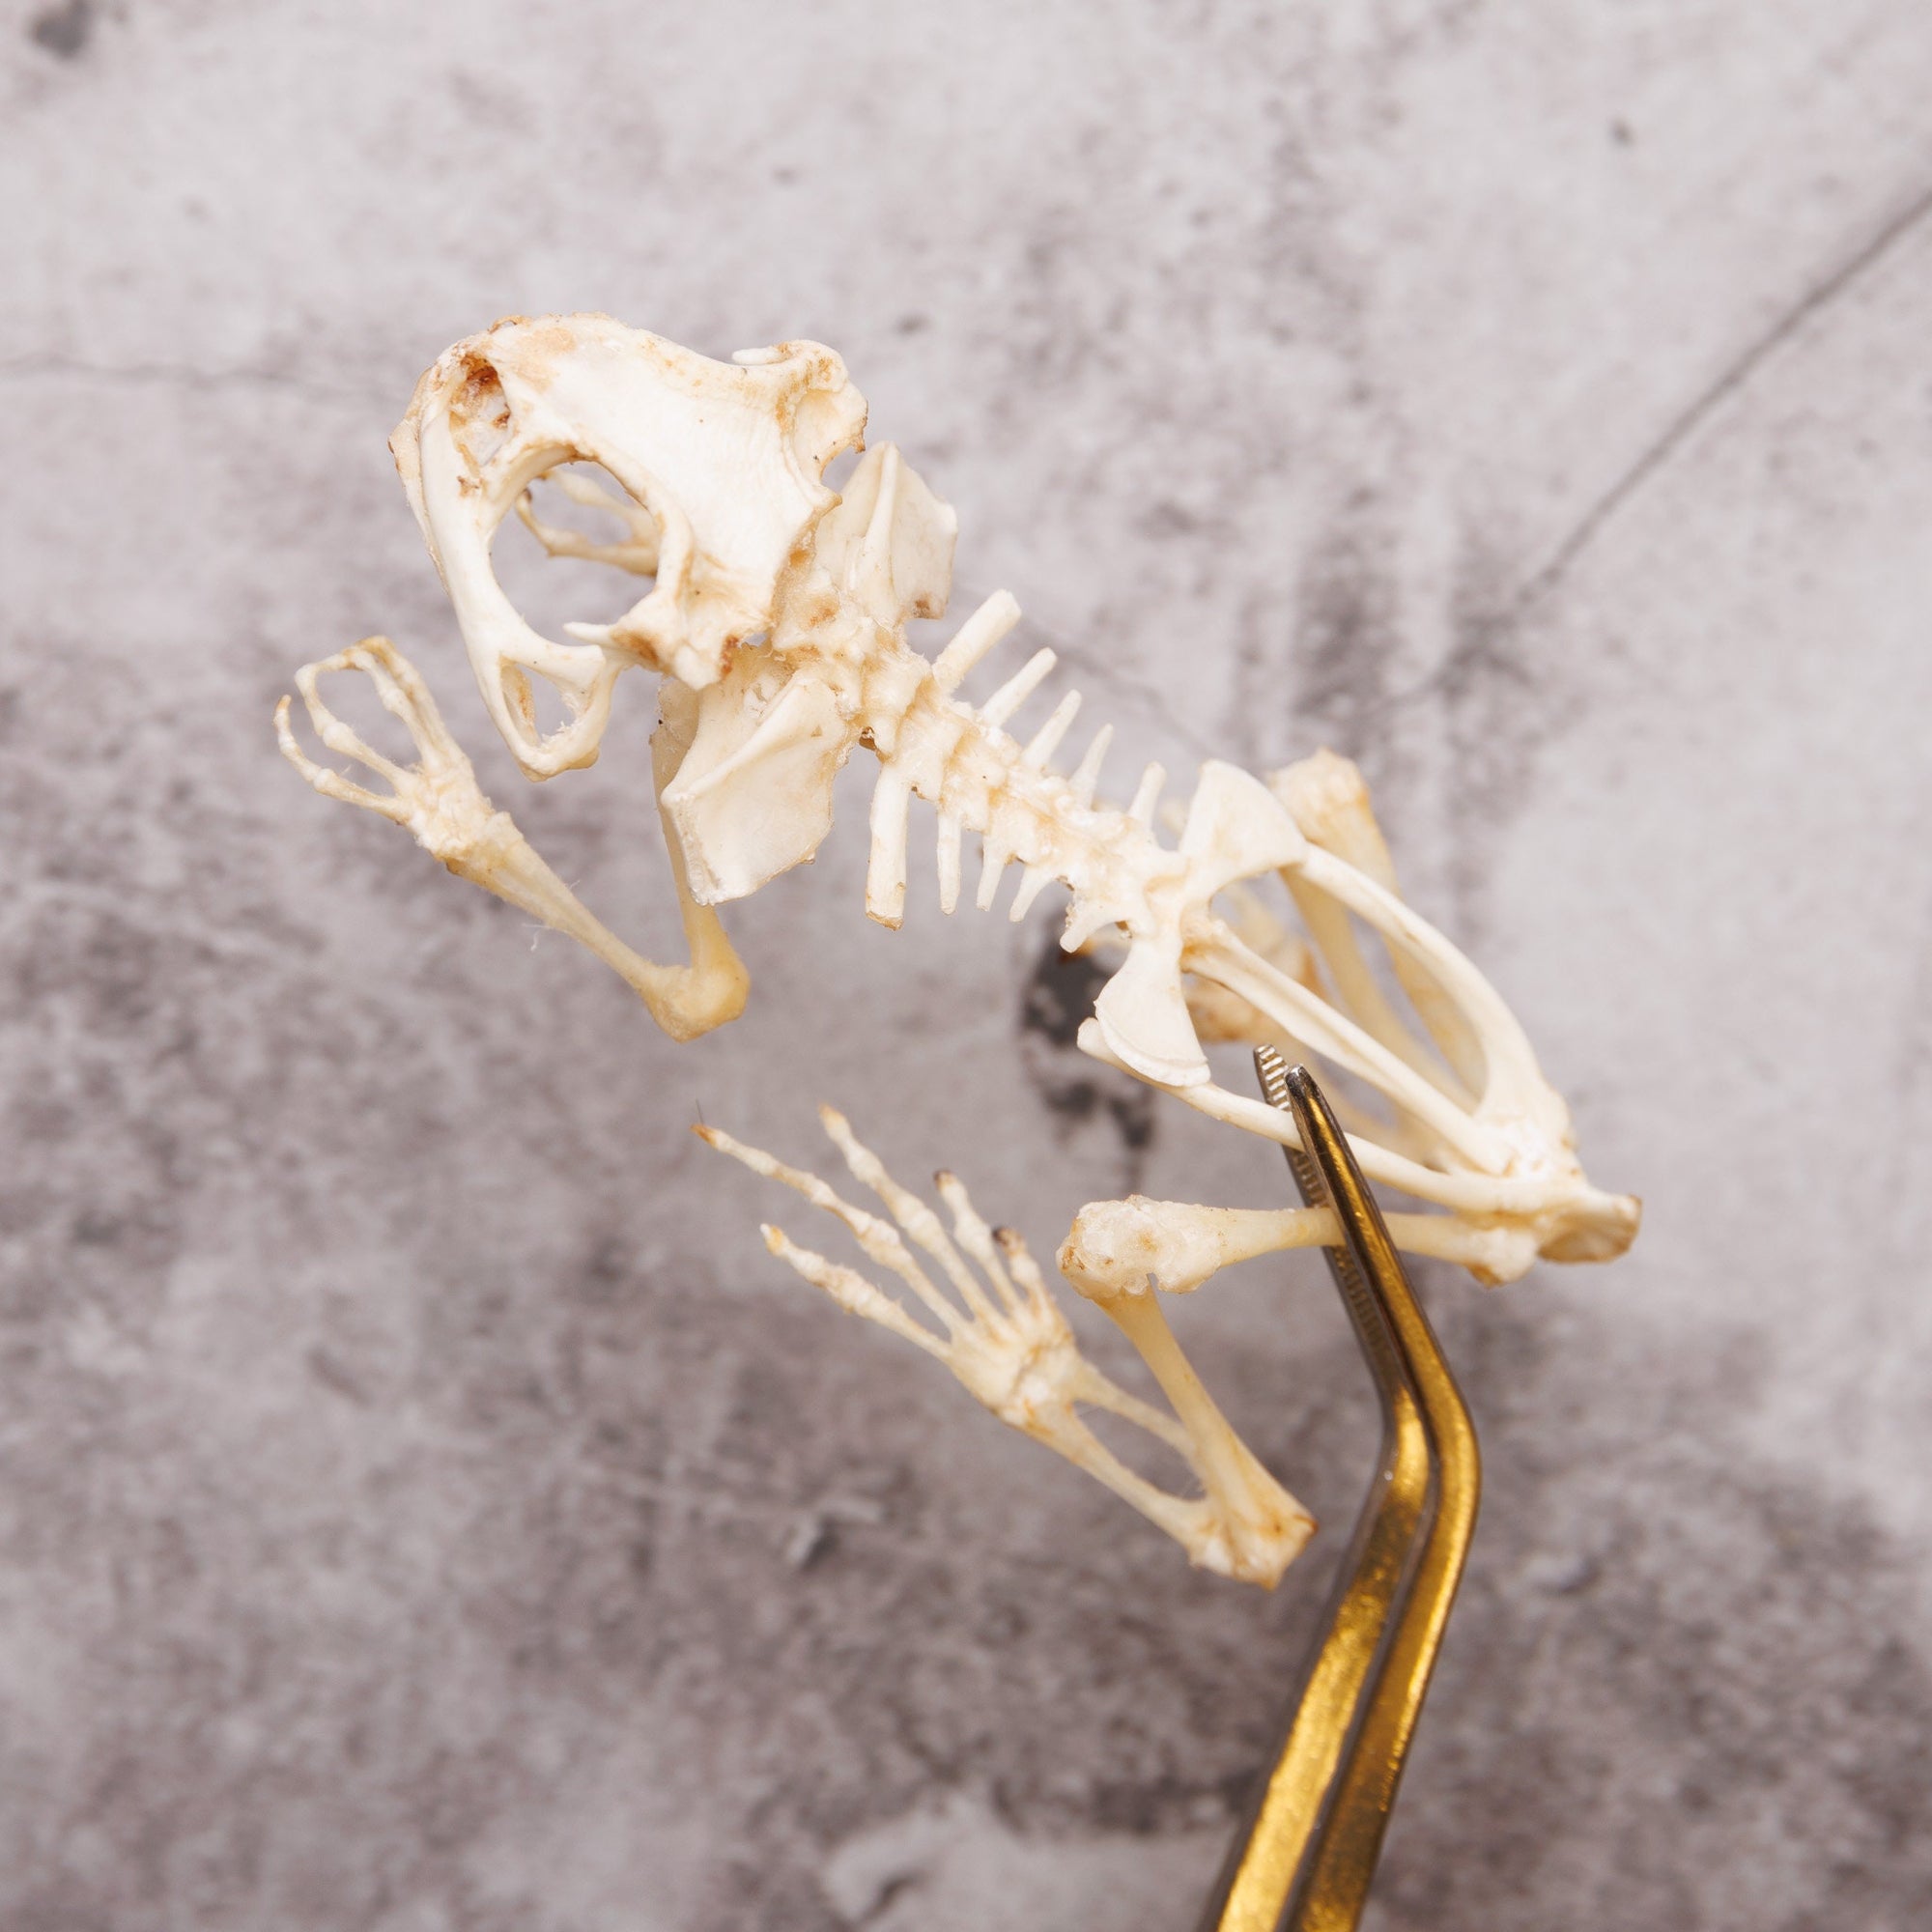 Javanese Toad Skeleton (Duttaphrynus melanosticus) | A1 Skeleton Specimen